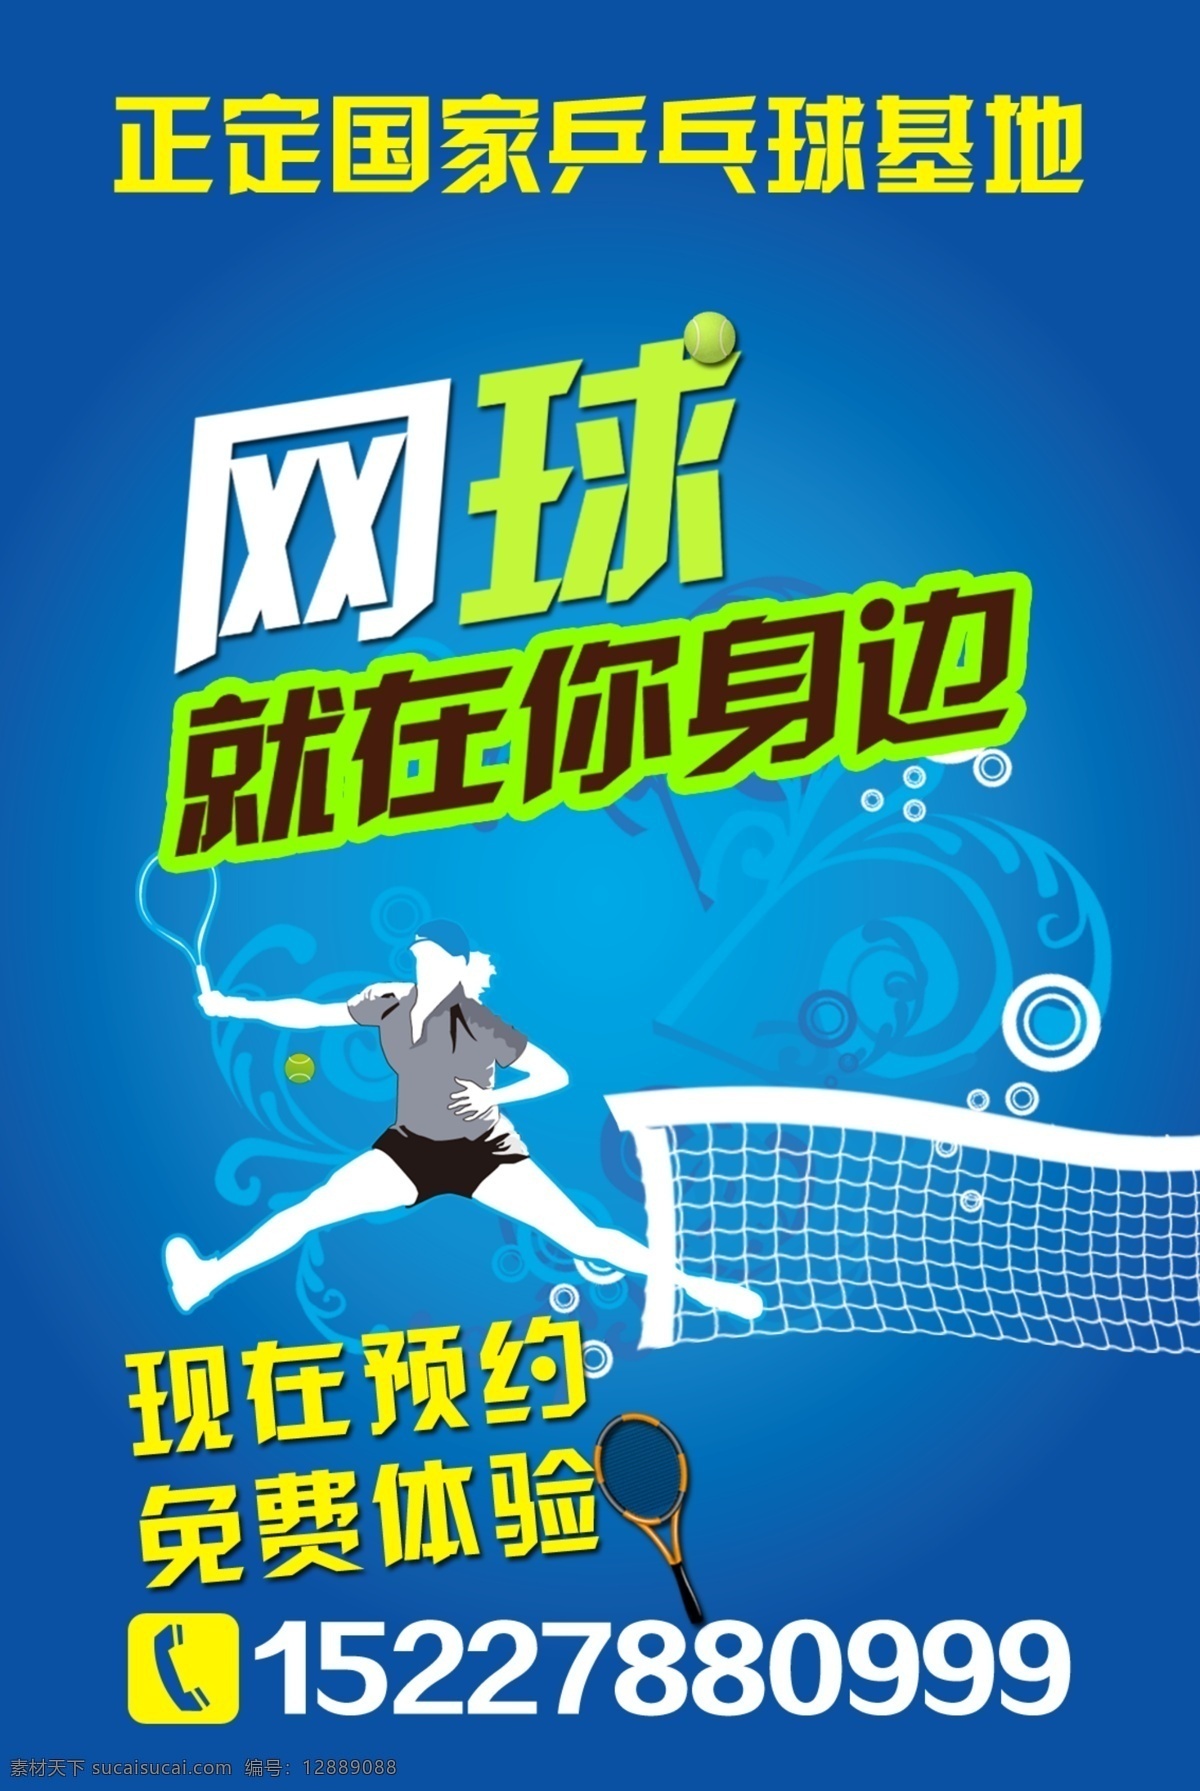 网球 招生 打网球 广告设计模板 网球海报 源文件 网球招生 其他海报设计